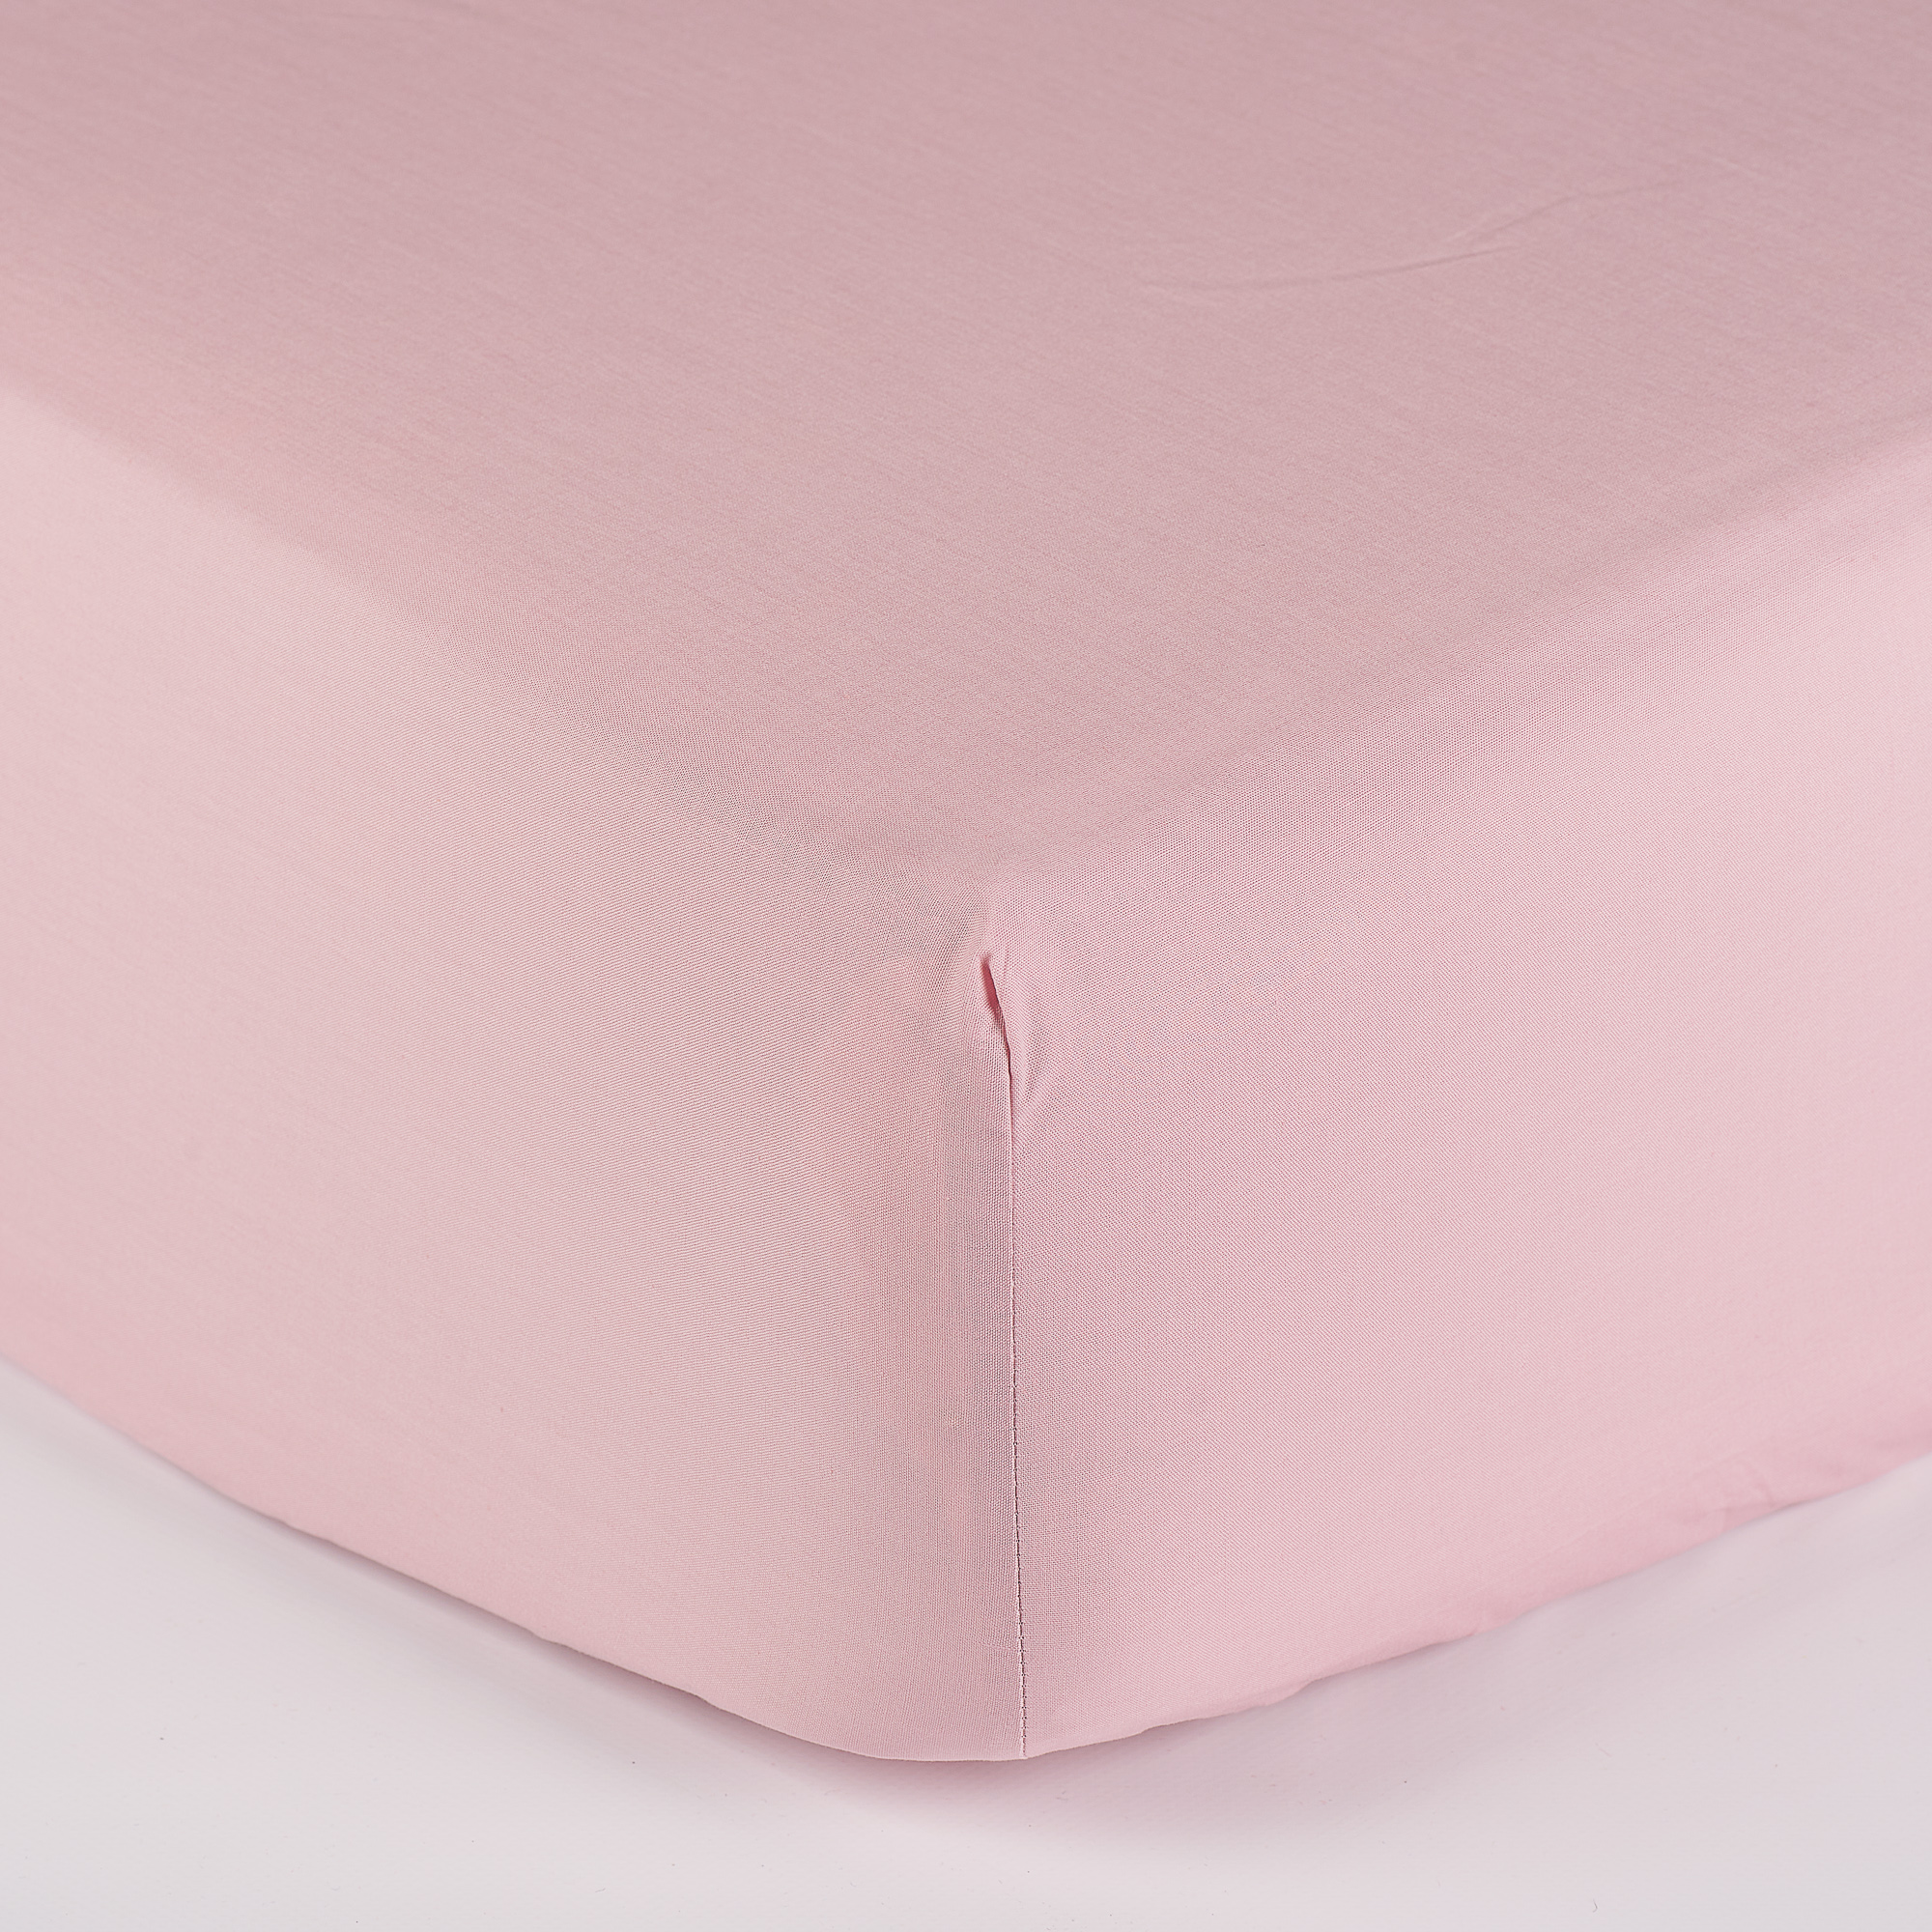 lenzuola sotto con angoli in raso 300 fili rosa antico - lasuite08